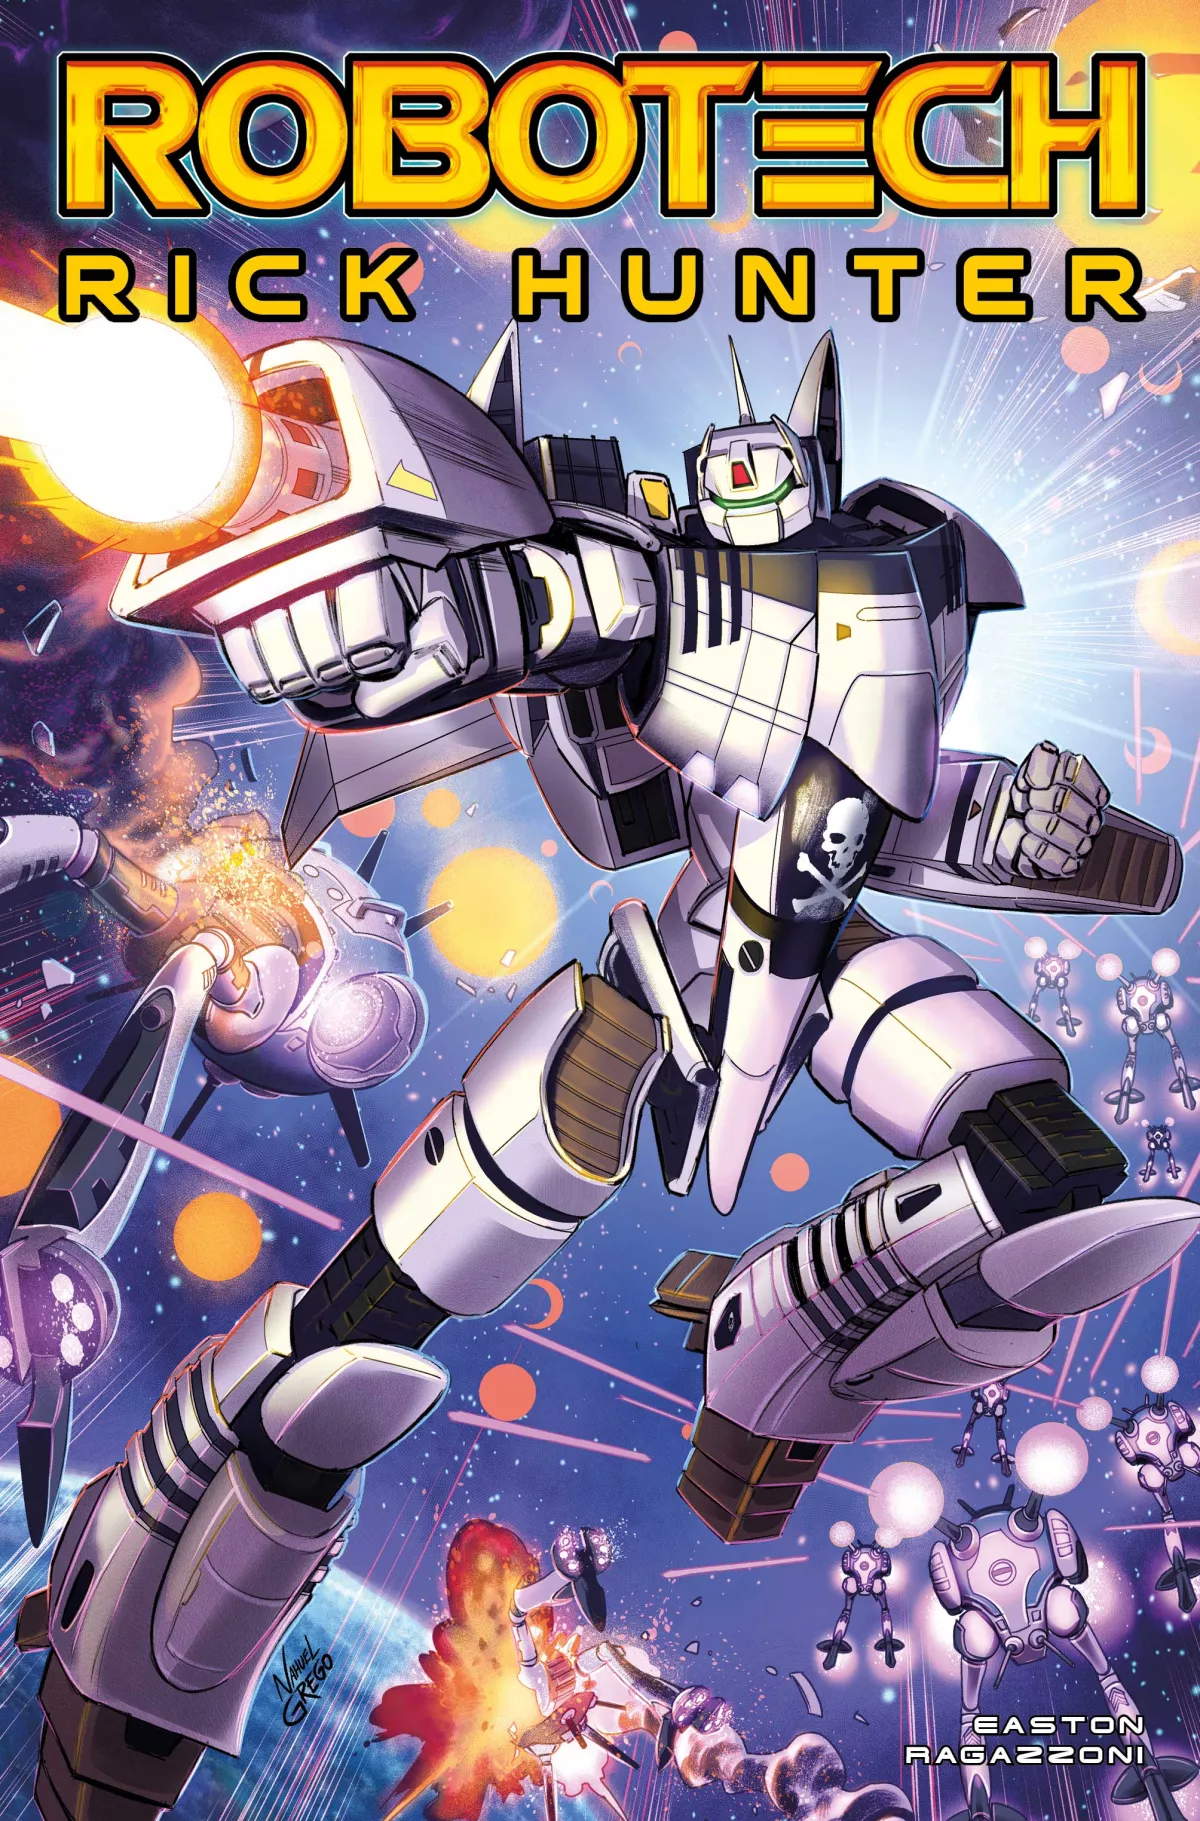 Robotech tiene un nuevo comic oficial que continua la historia de Rick Hunter